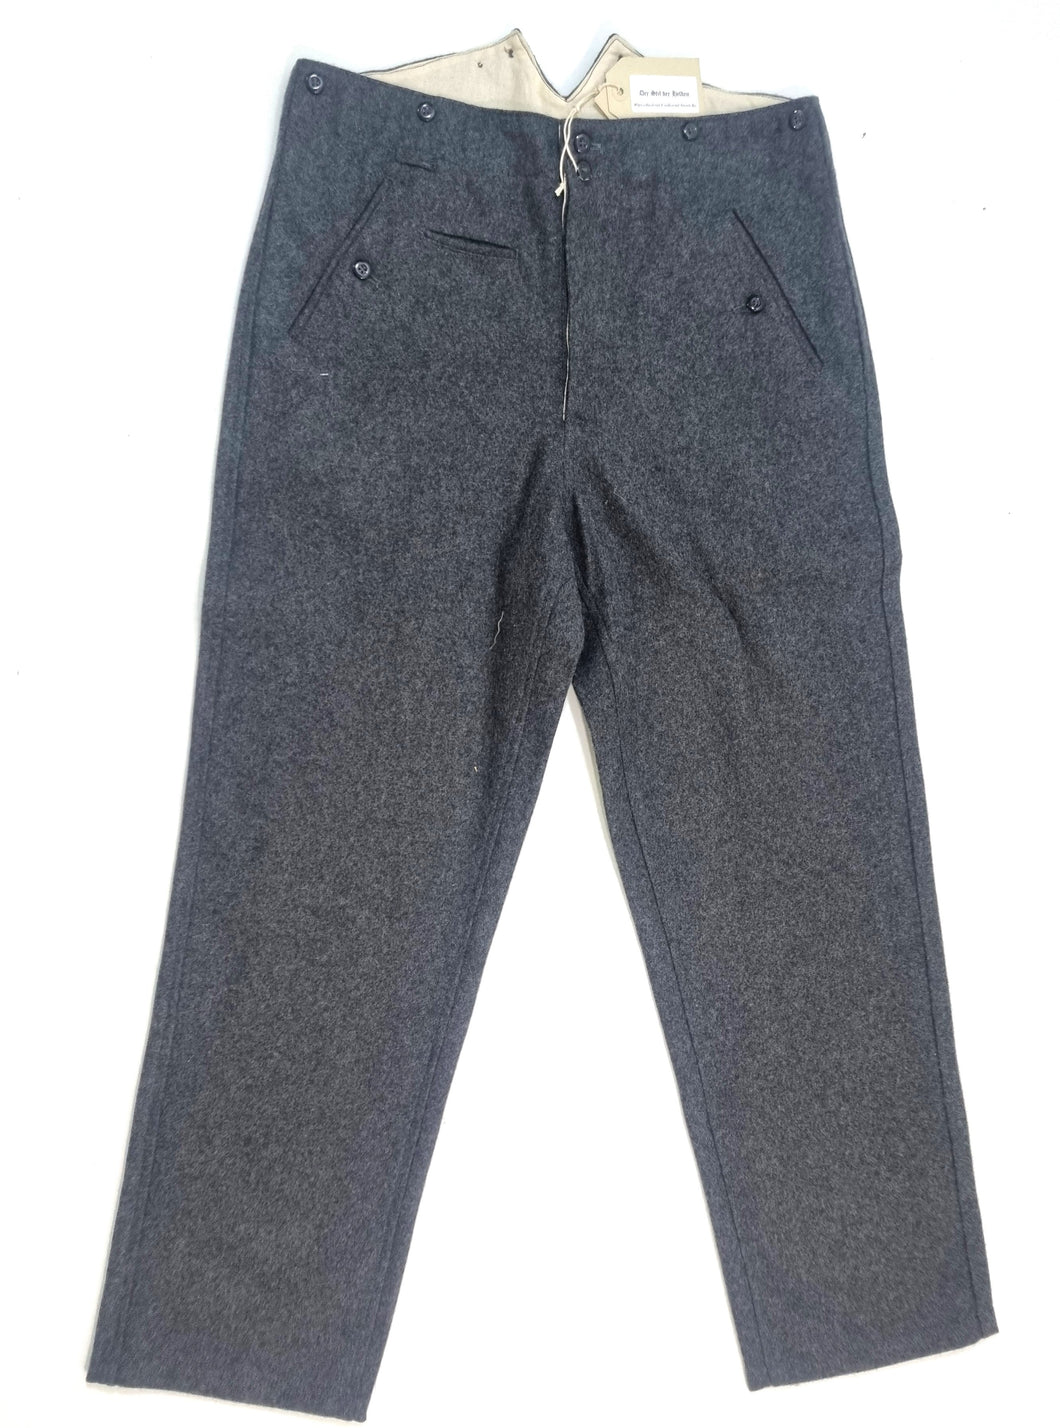 WW2 Riproduzione Pantalone Esercito Tedesco mod 37/40.